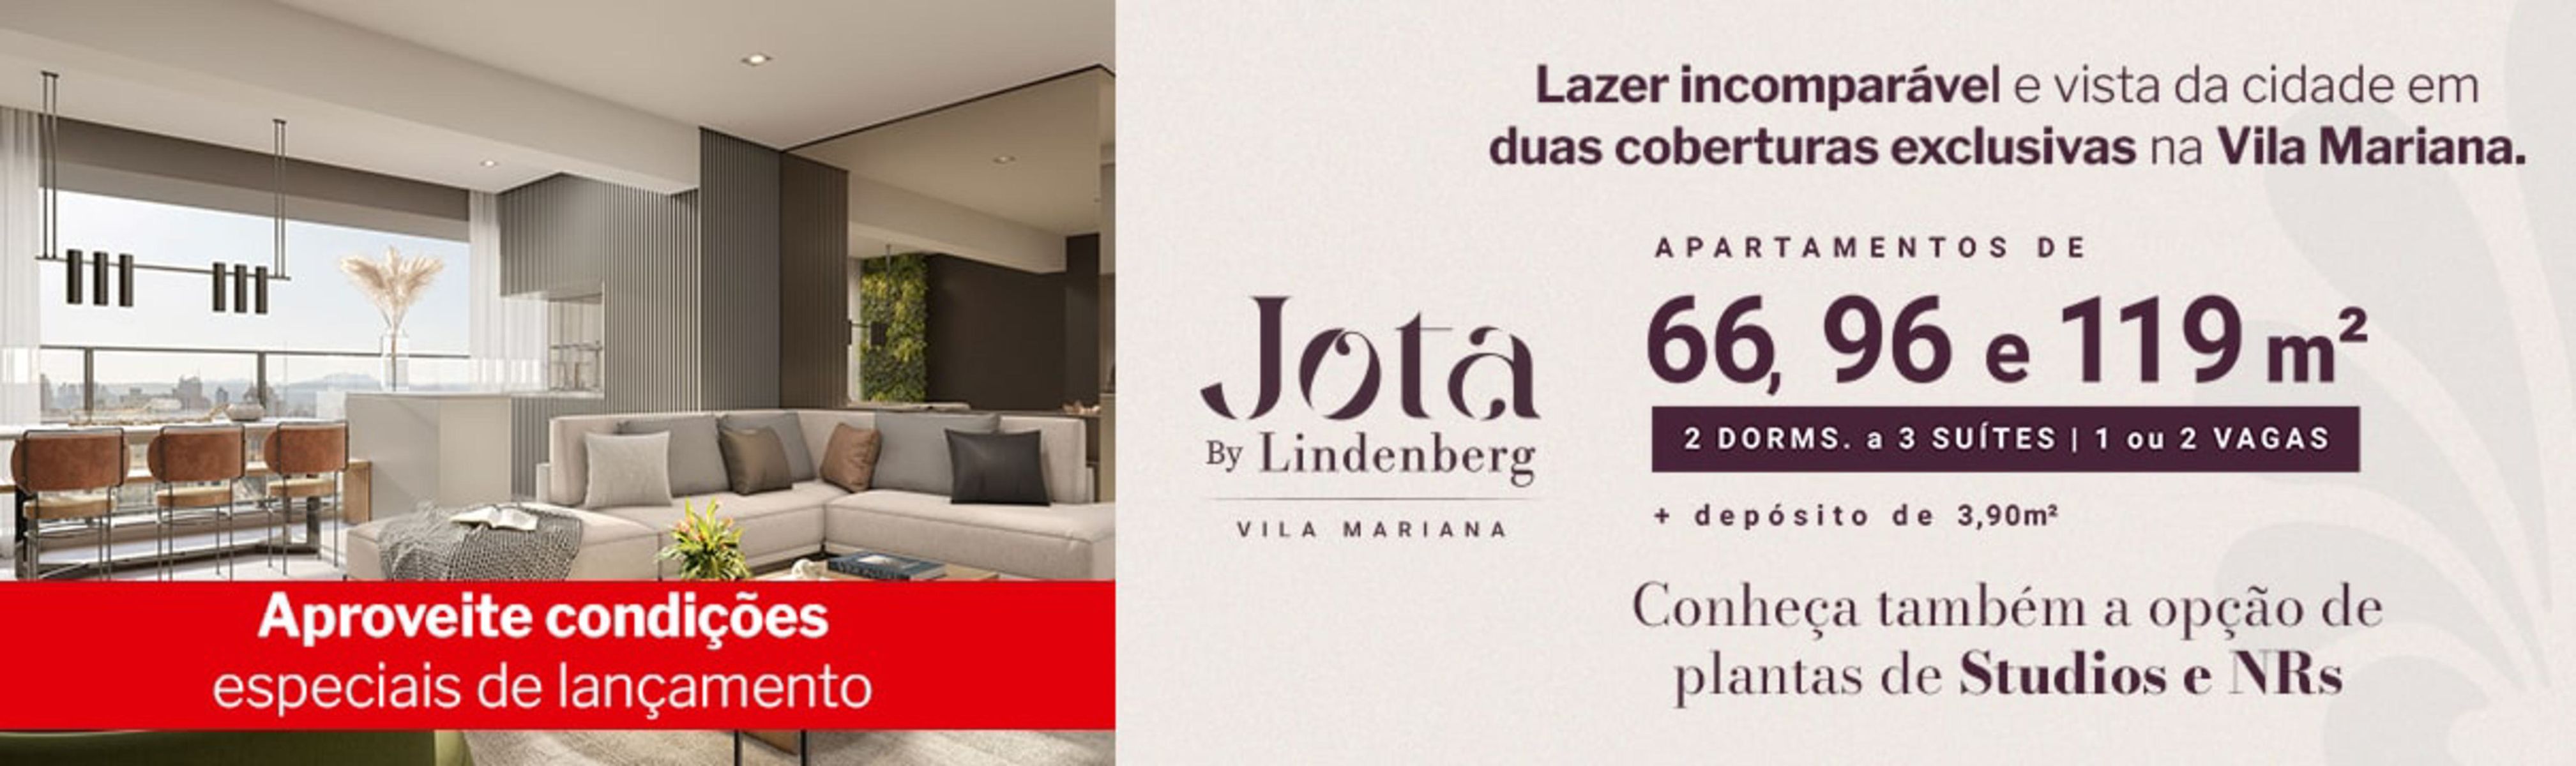 Apartamentos de Jota 66 96 e 119m na Vila Mariana + depósito de 3,90m*